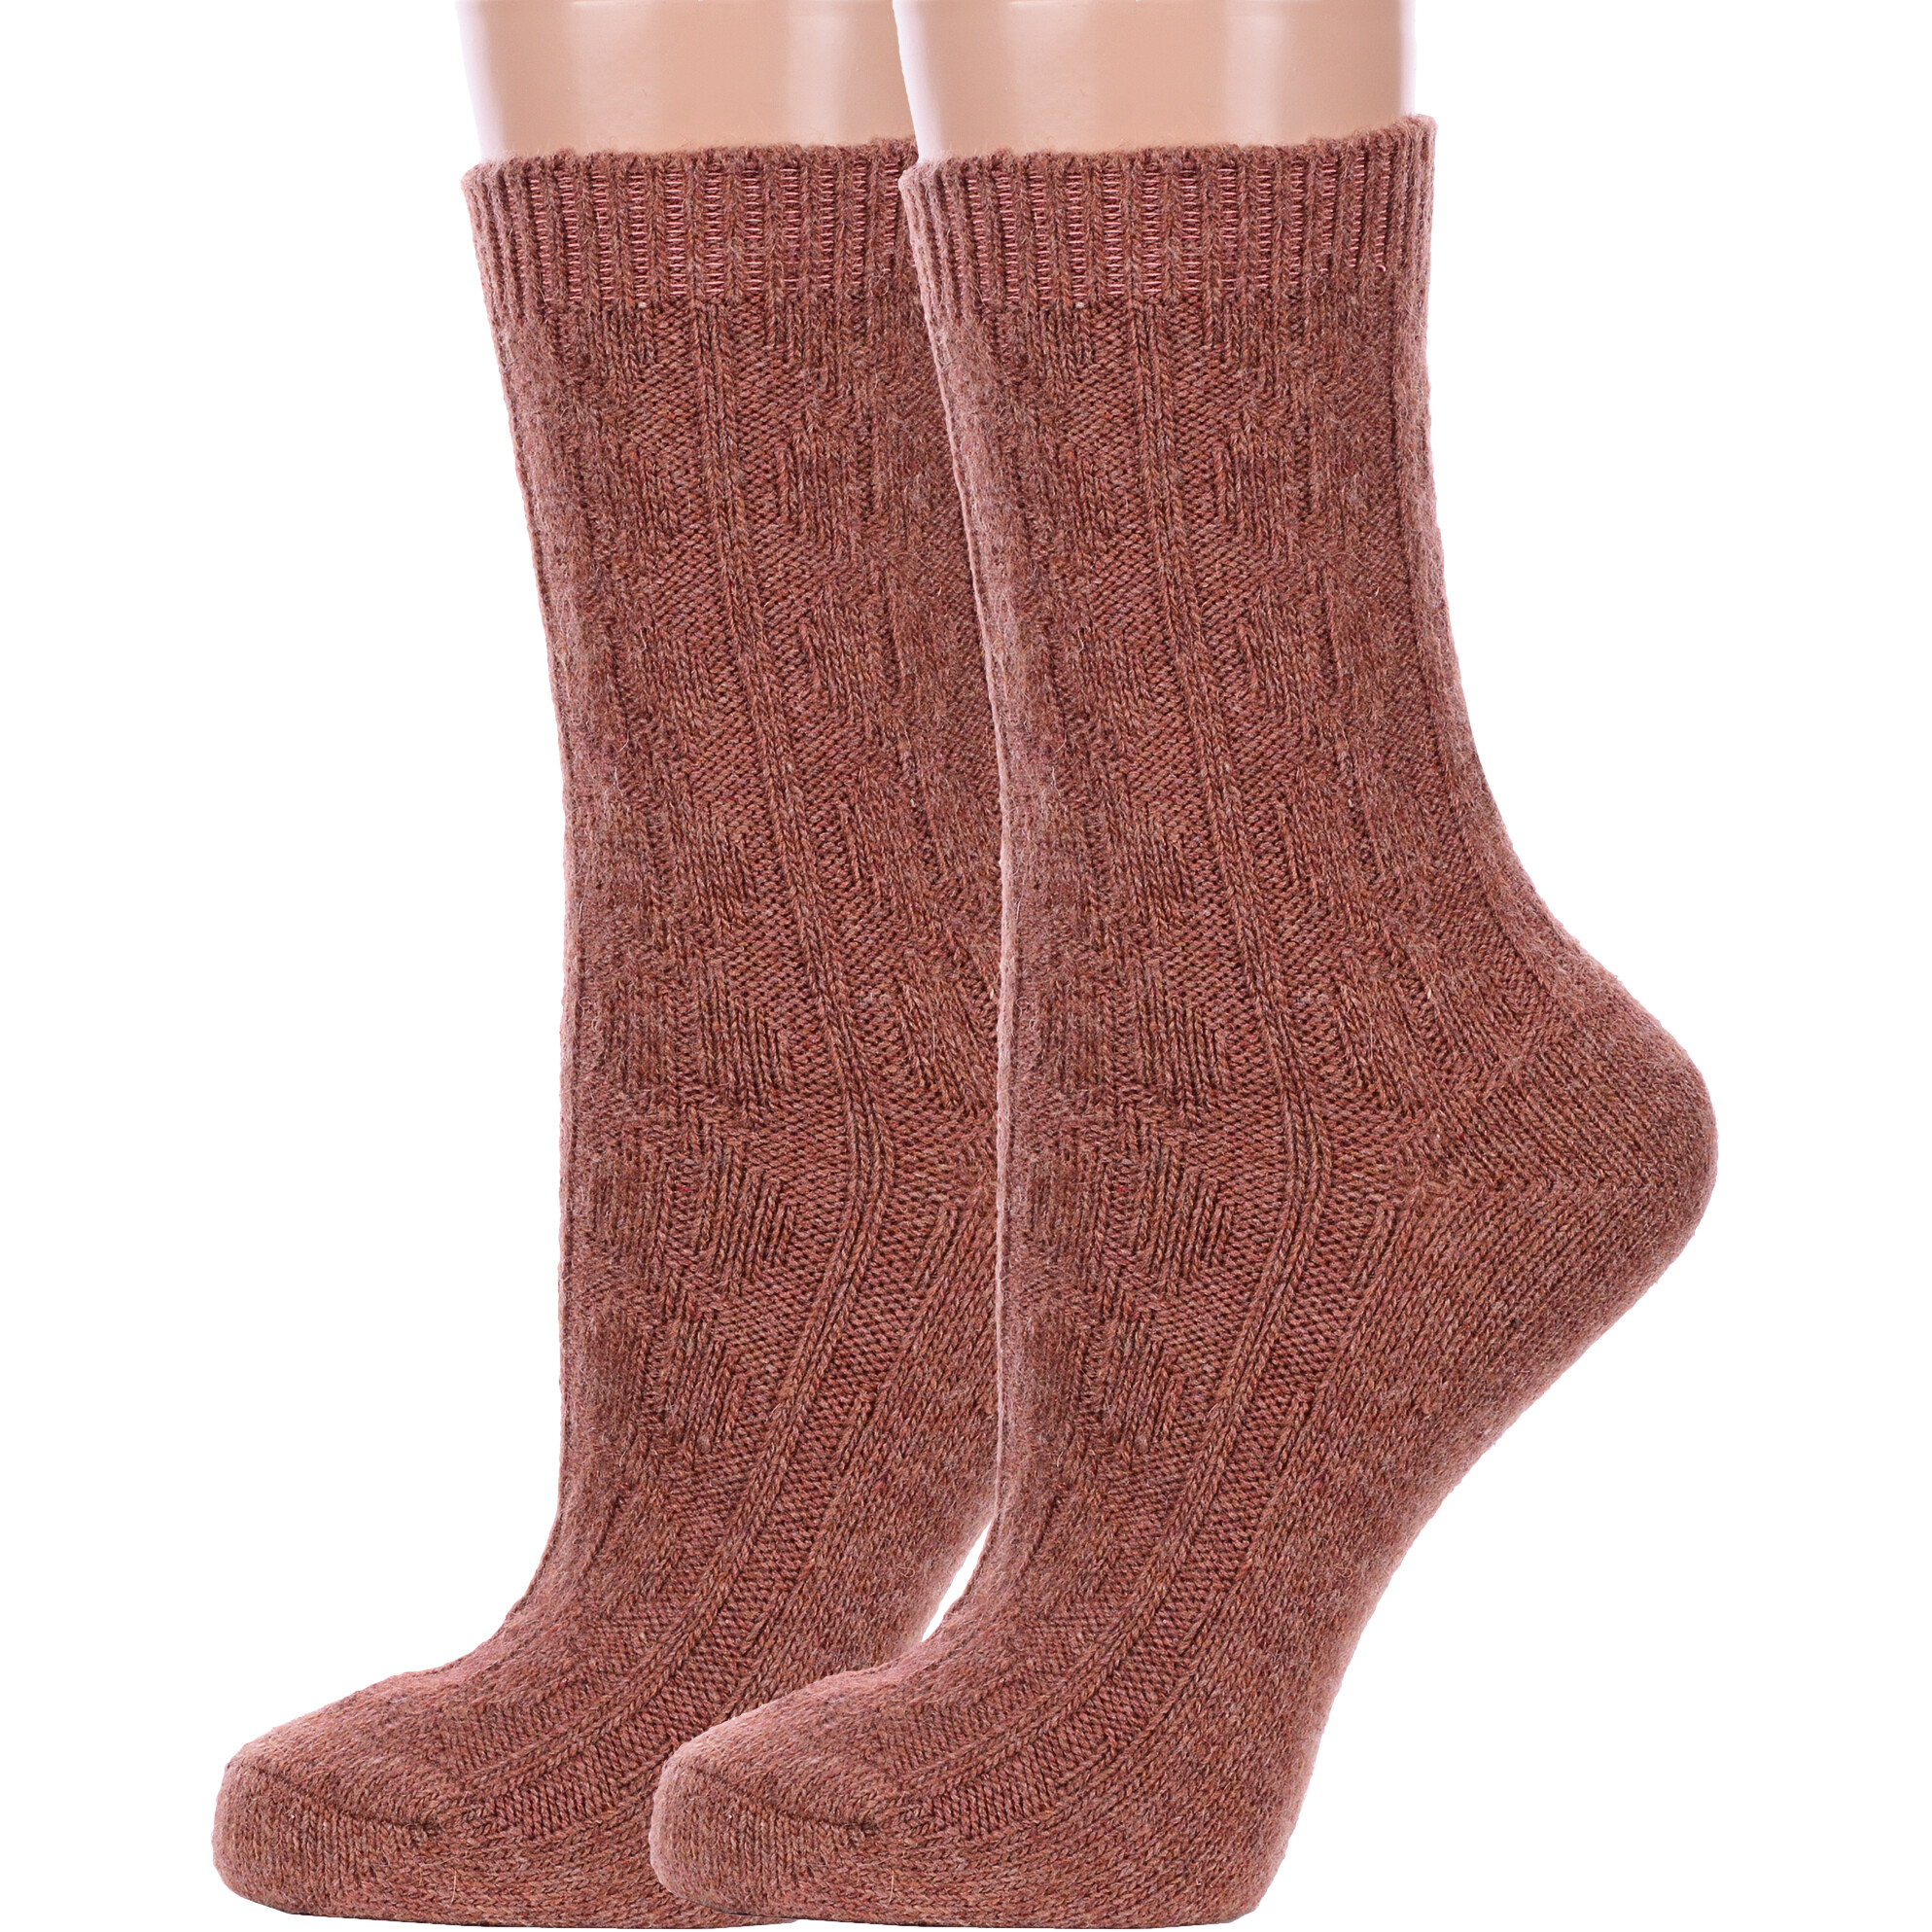 Комплект носков женских Hobby Line 2-Нжш33-09 коричневых 36-40, 2 пары